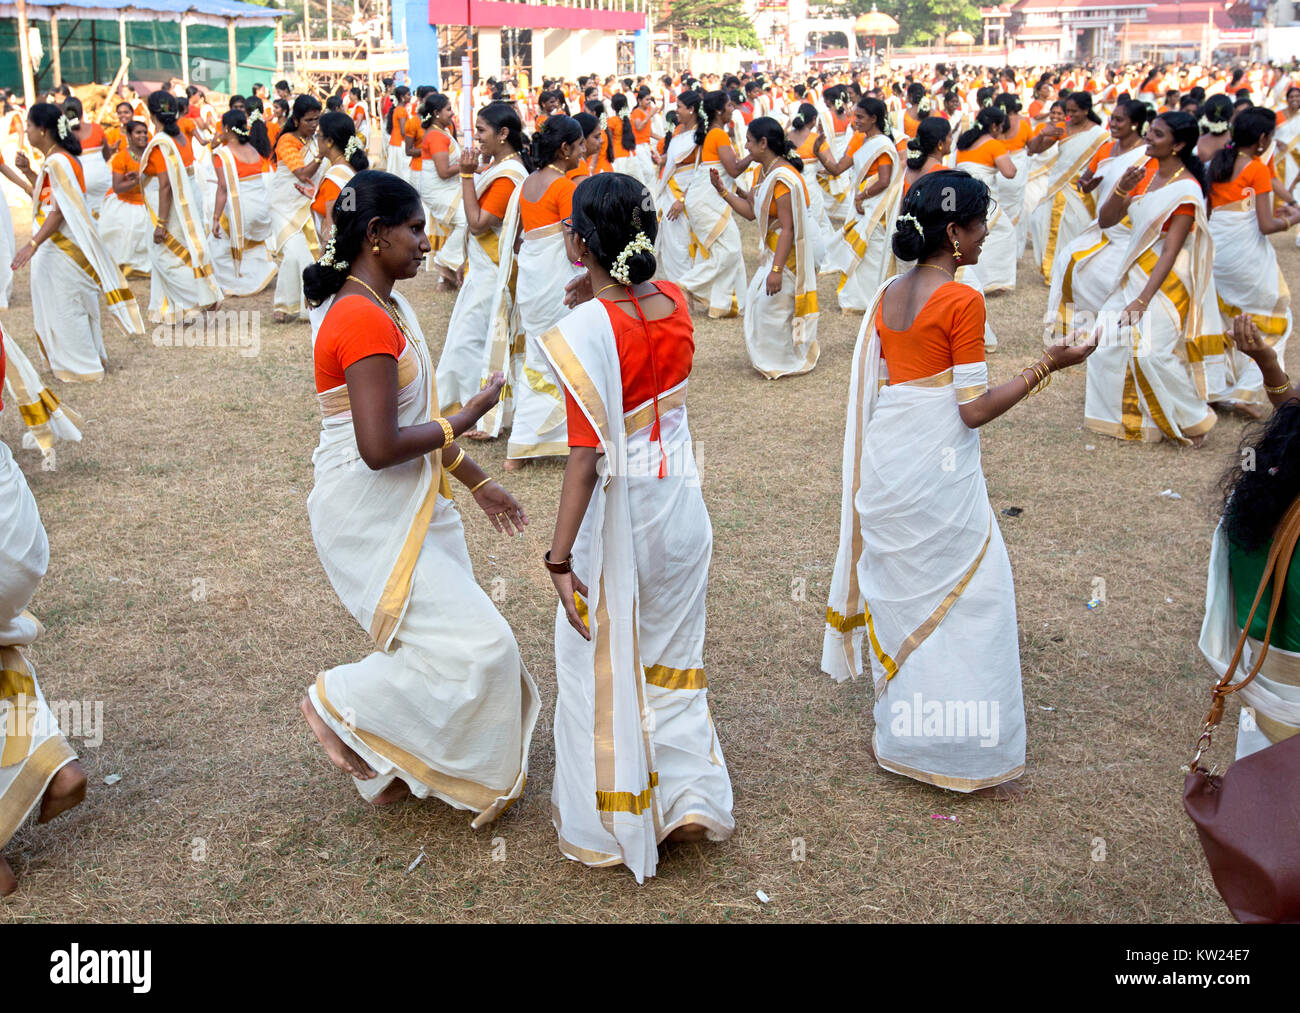 Thissur, India. 30 Dic, 2017. più di 1200 donne hanno partecipato a questo evento.La manifestazione è stata condotta dal Kerala kshethra samrakshana samithi.I ballerini ha iniziato con una invocazione al Signore Ganesa. I partecipanti hanno ballato per Thiruvathirapattu, Kathakali padam, Kummi, Kurathipattu Vanchipattu e. Thiruvathirakali è tradizionalmente effettuata il giorno di Thiruvathira in Malayalam mese di Dhanu (Dicembre-gennaio). Donne ballo con accompagnamento di Thiruvathira paattu. Le canzoni si riferiscono a Parvati la nostalgia per il Signore Shiva. Credito: pradeep subramanian/Alamy Live News Foto Stock